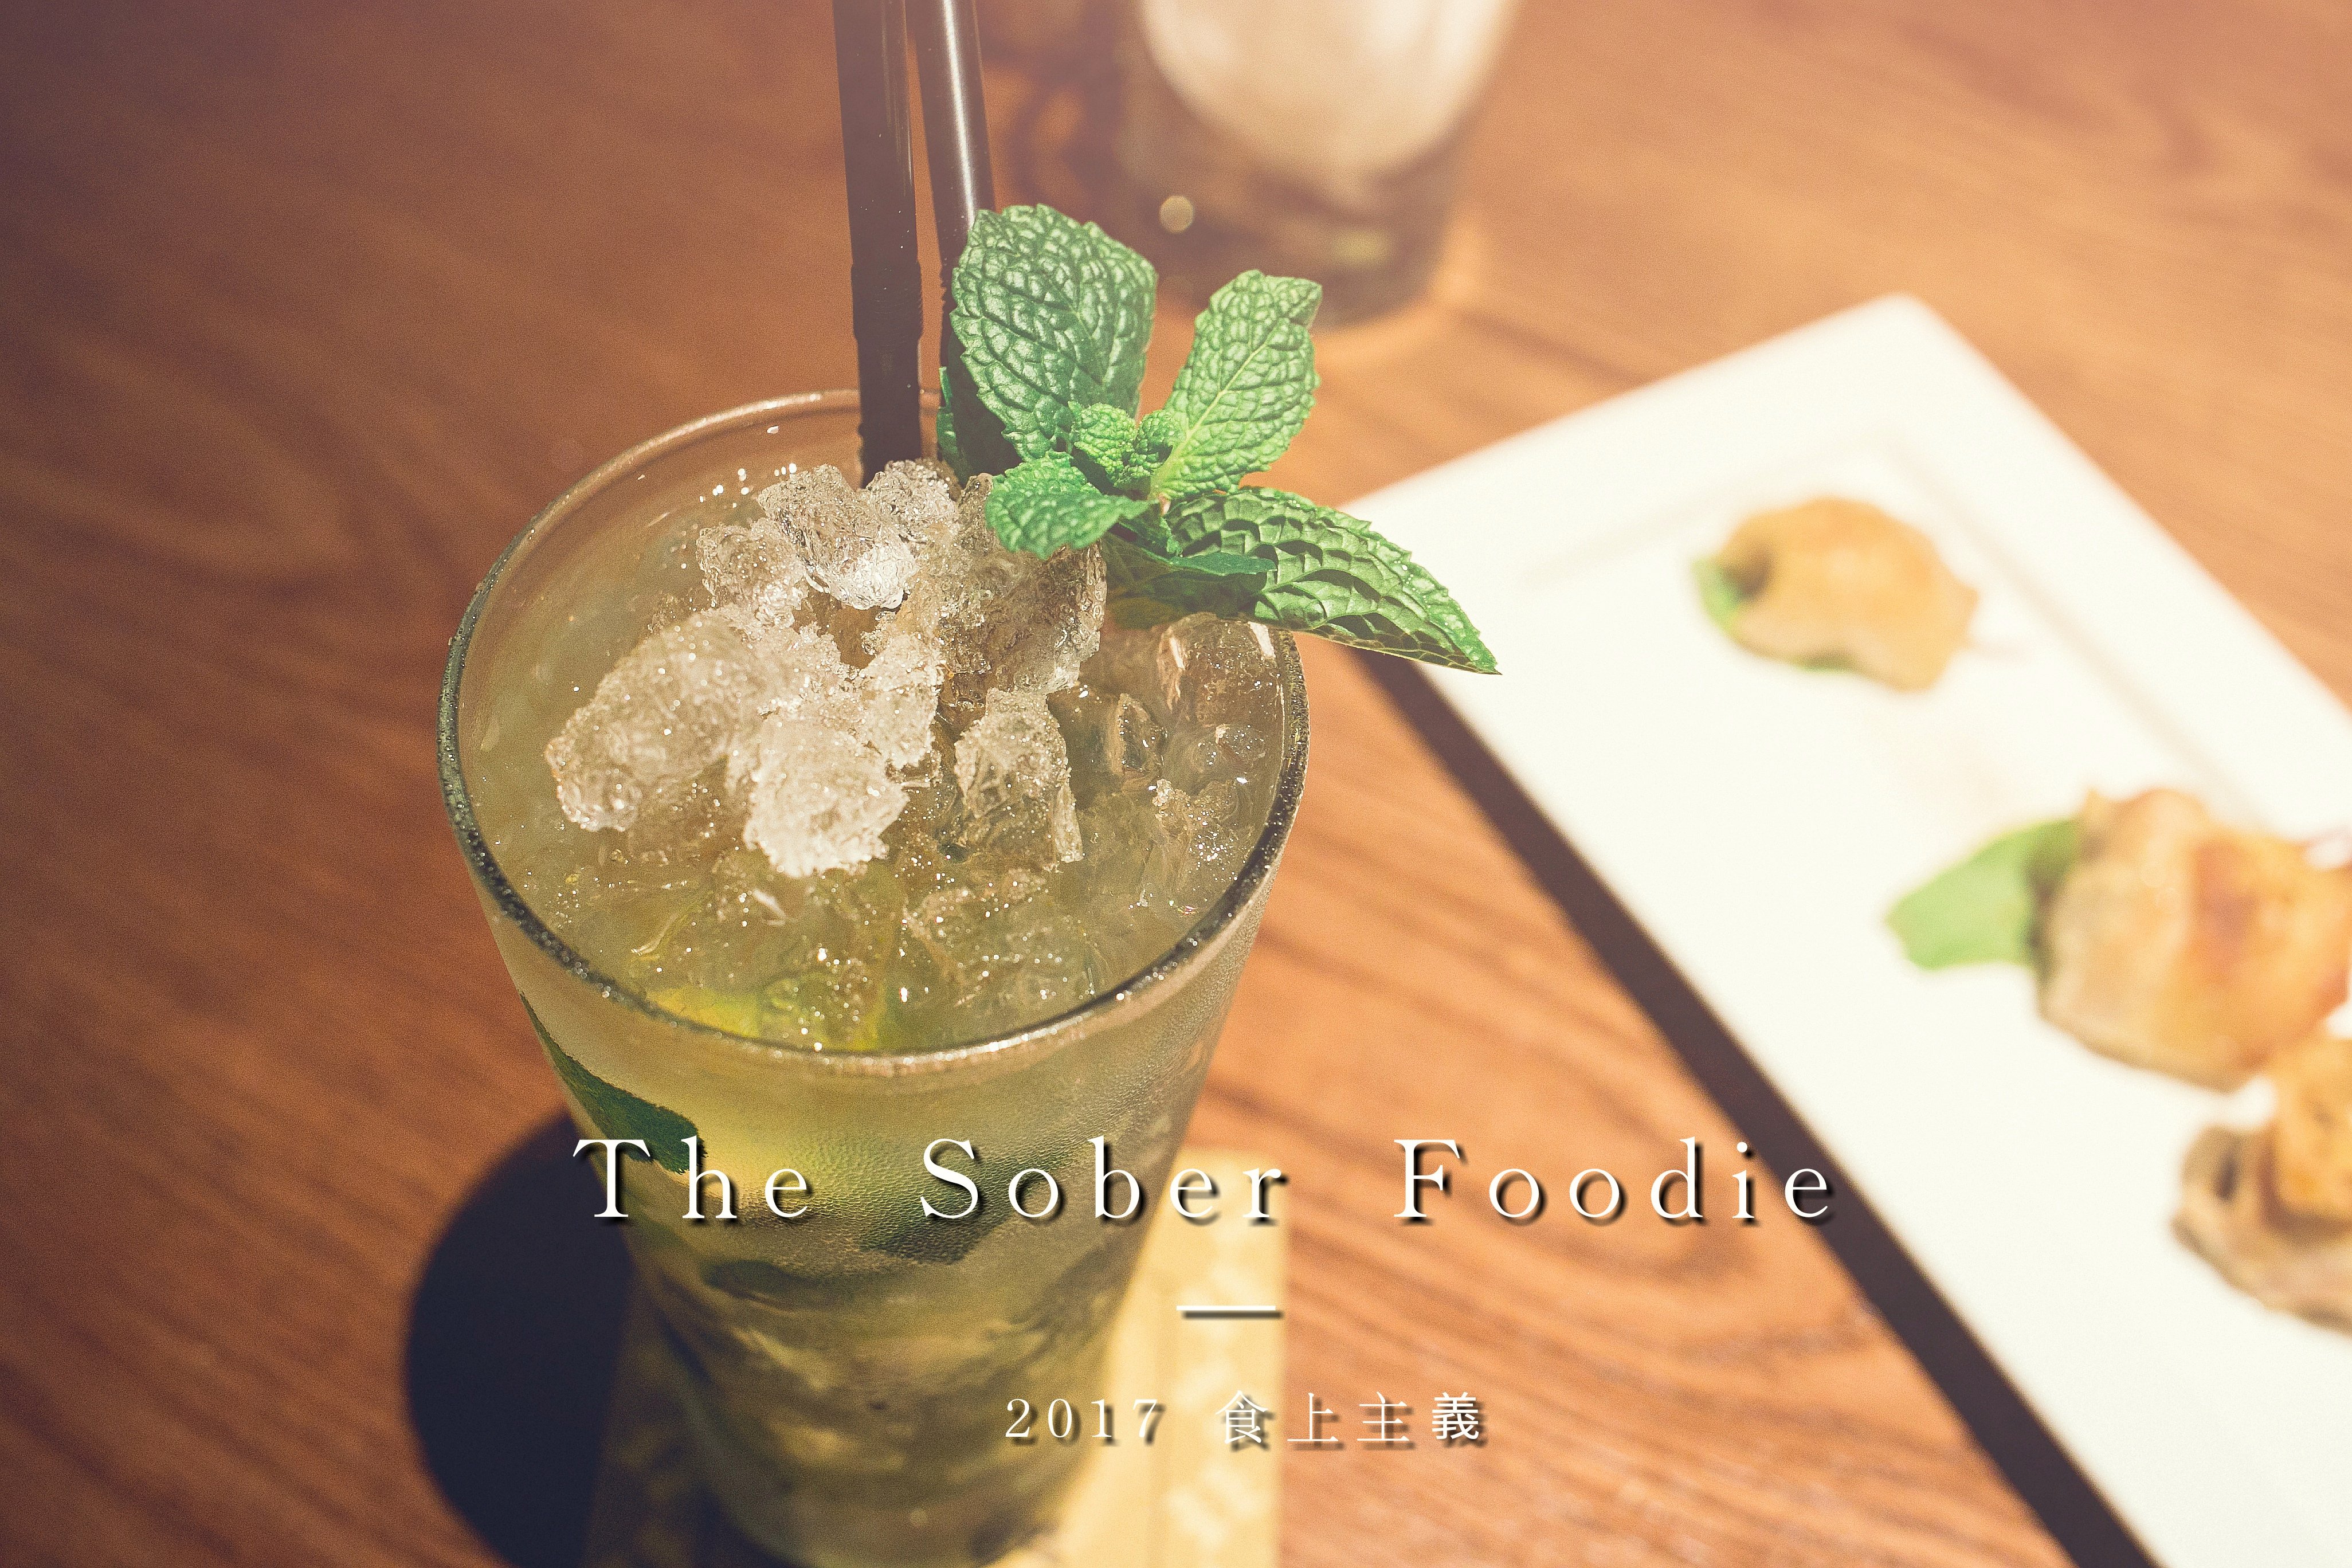 台南南區餐酒館．The Sober Foodie 食上主義 豪宅餐酒館．享受舒適靜謐的小酌時光